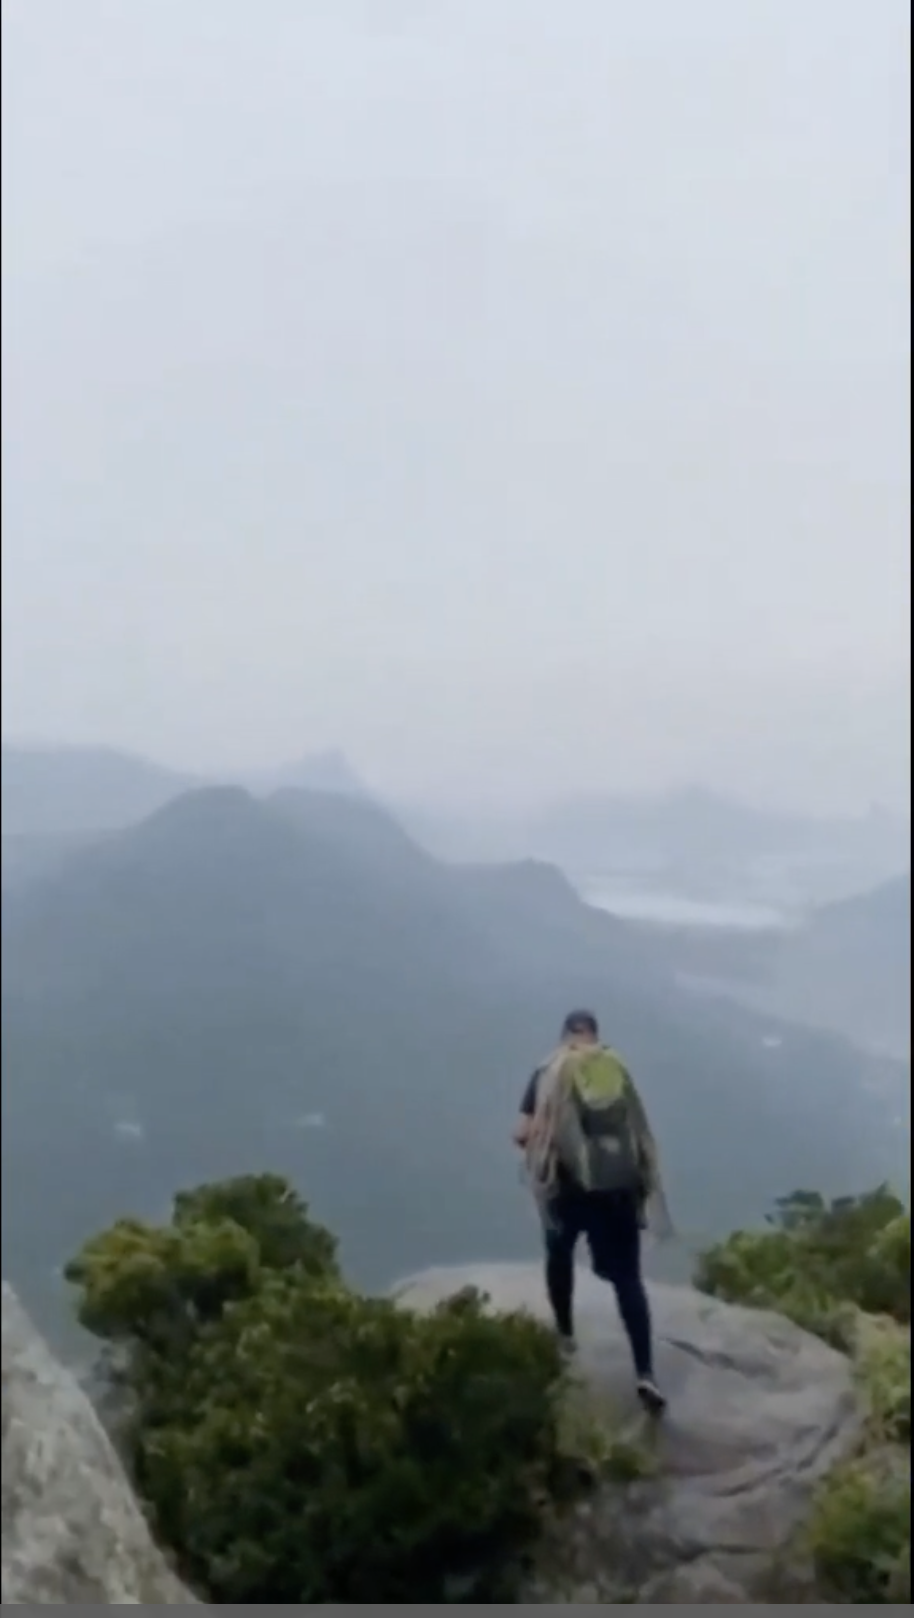 36-річний екскурсовод загинув від удару блискавки на вершині скелі: туристка випадково зняла на відео його останні моменти життя